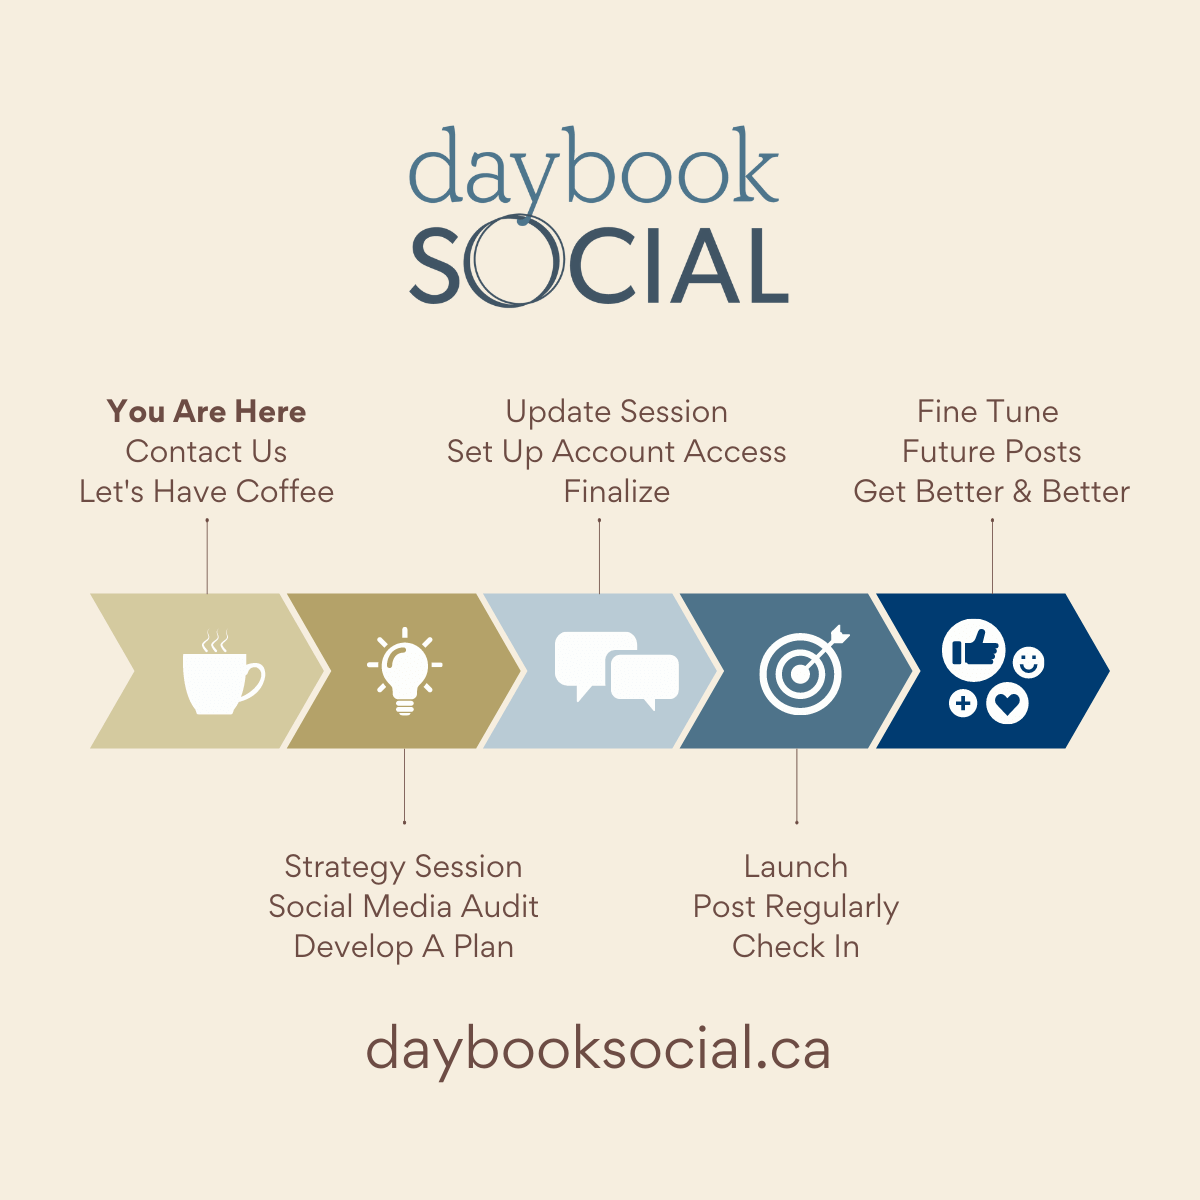 daybook social process flowchart